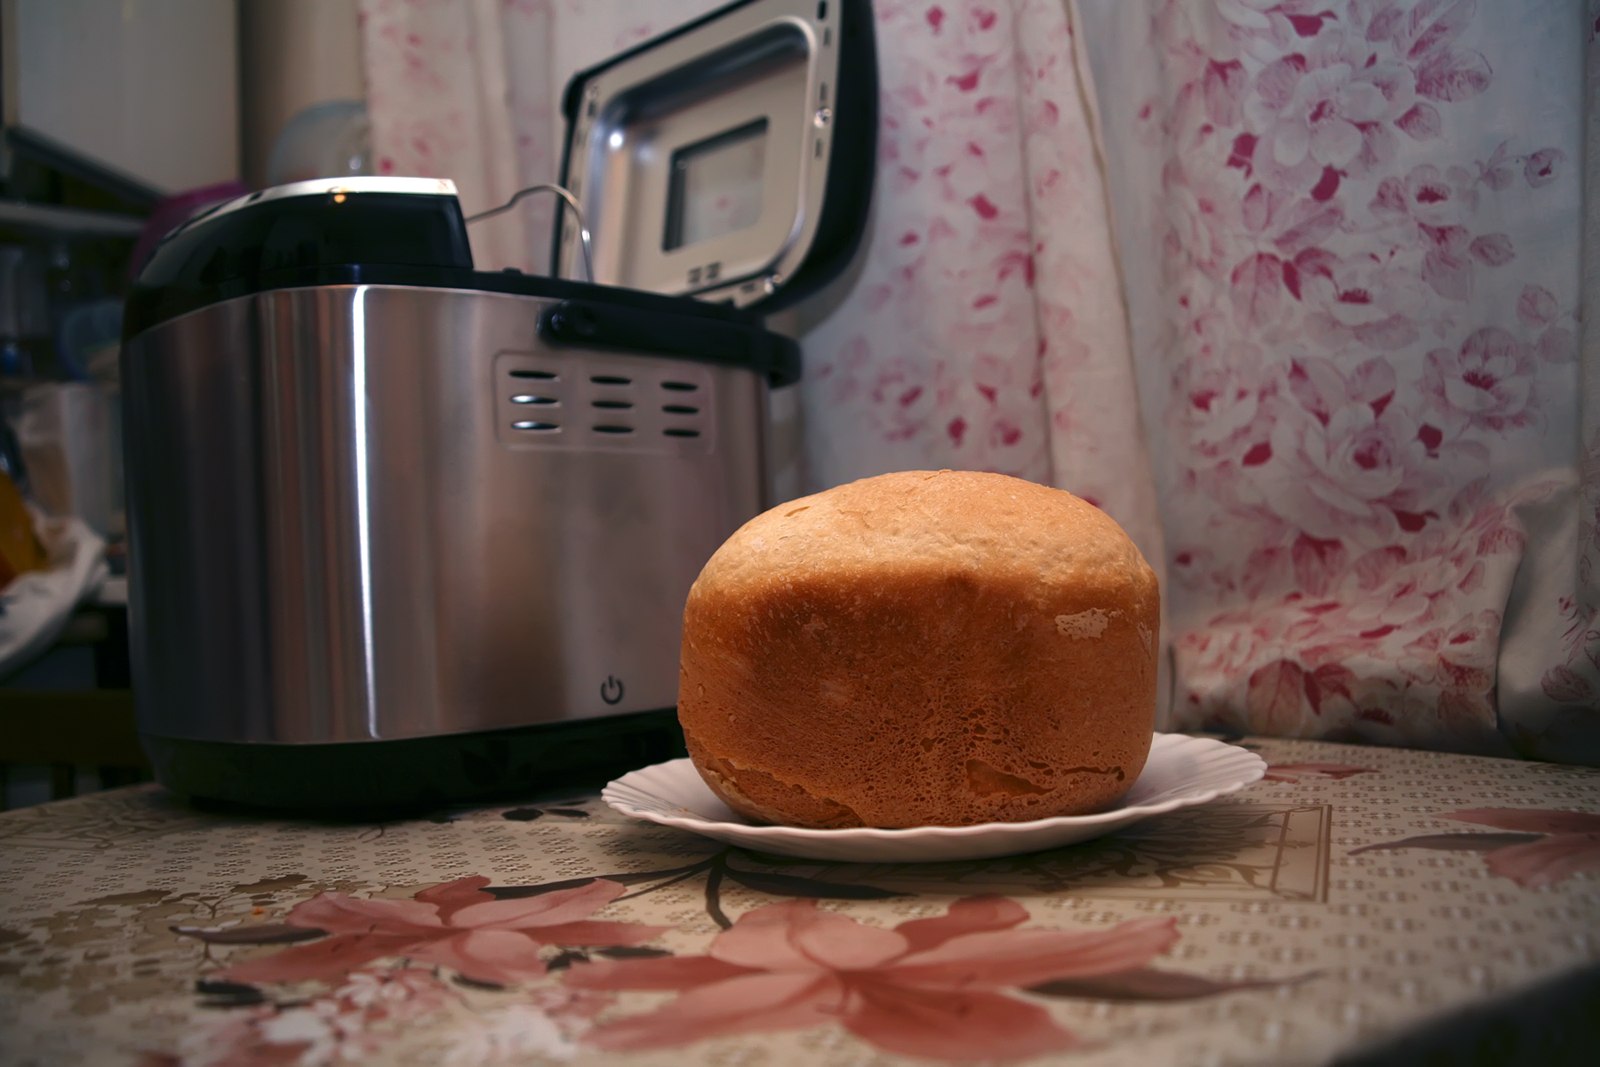 Как правильно печь хлеб. Хлеб в хлебопечке. Хлеб из хлебопечки. Выпекание хлеба в хлебопечке. Домашний хлеб в хлебопечке.